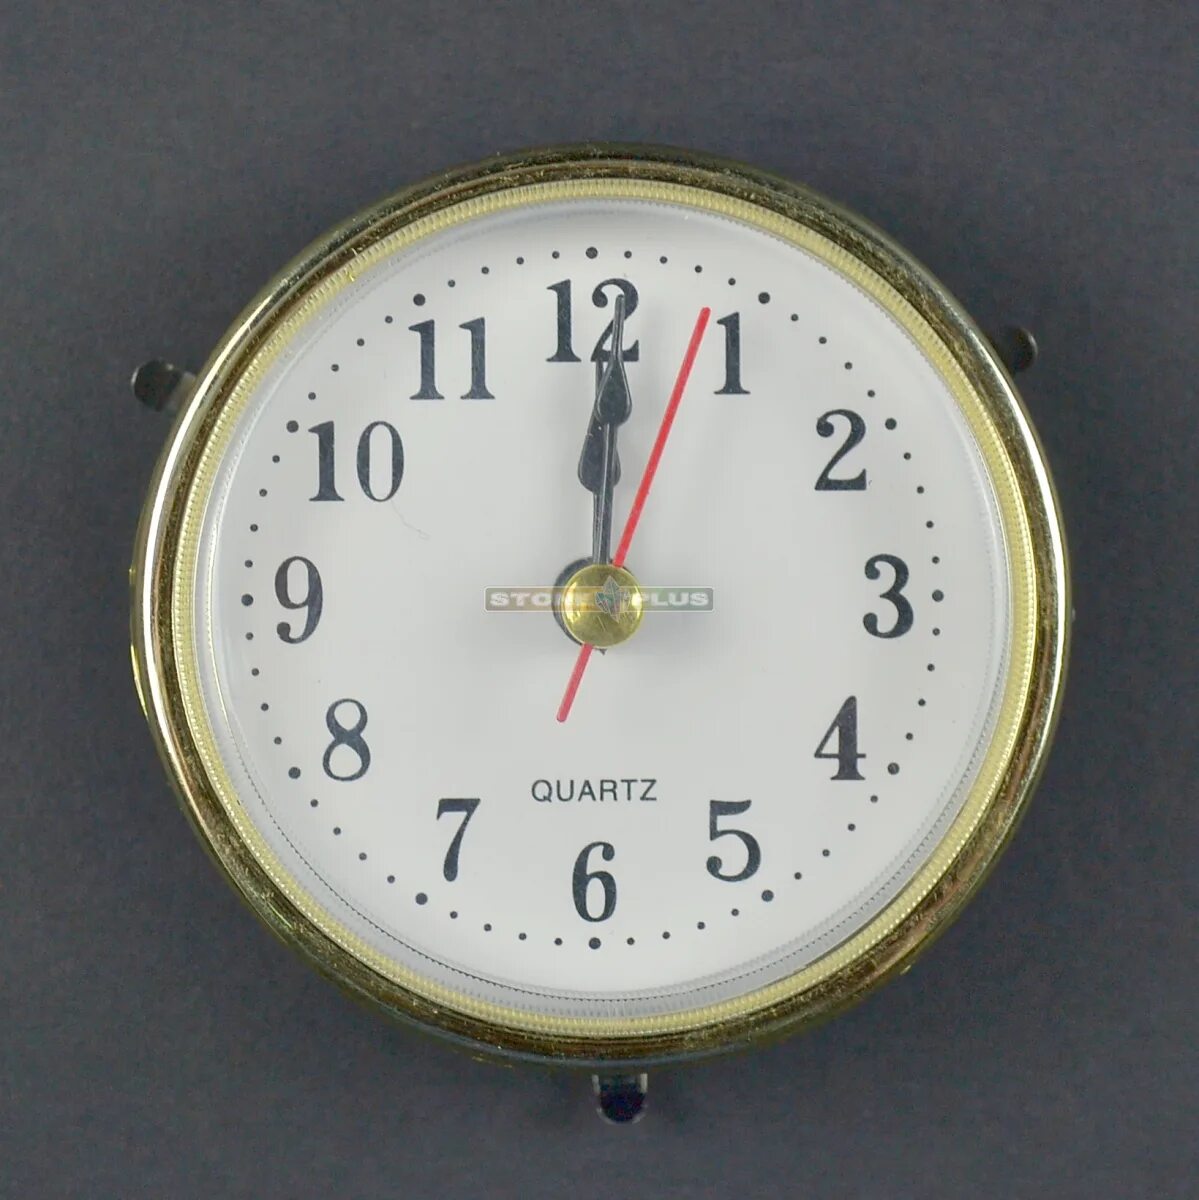 Круглый часовой механизм ostar 6304 Quartz. Кварцевый часовой механизм м2188. Встраиваемый часовой механизм для настольных часов. Часовая капсула встраиваемые.